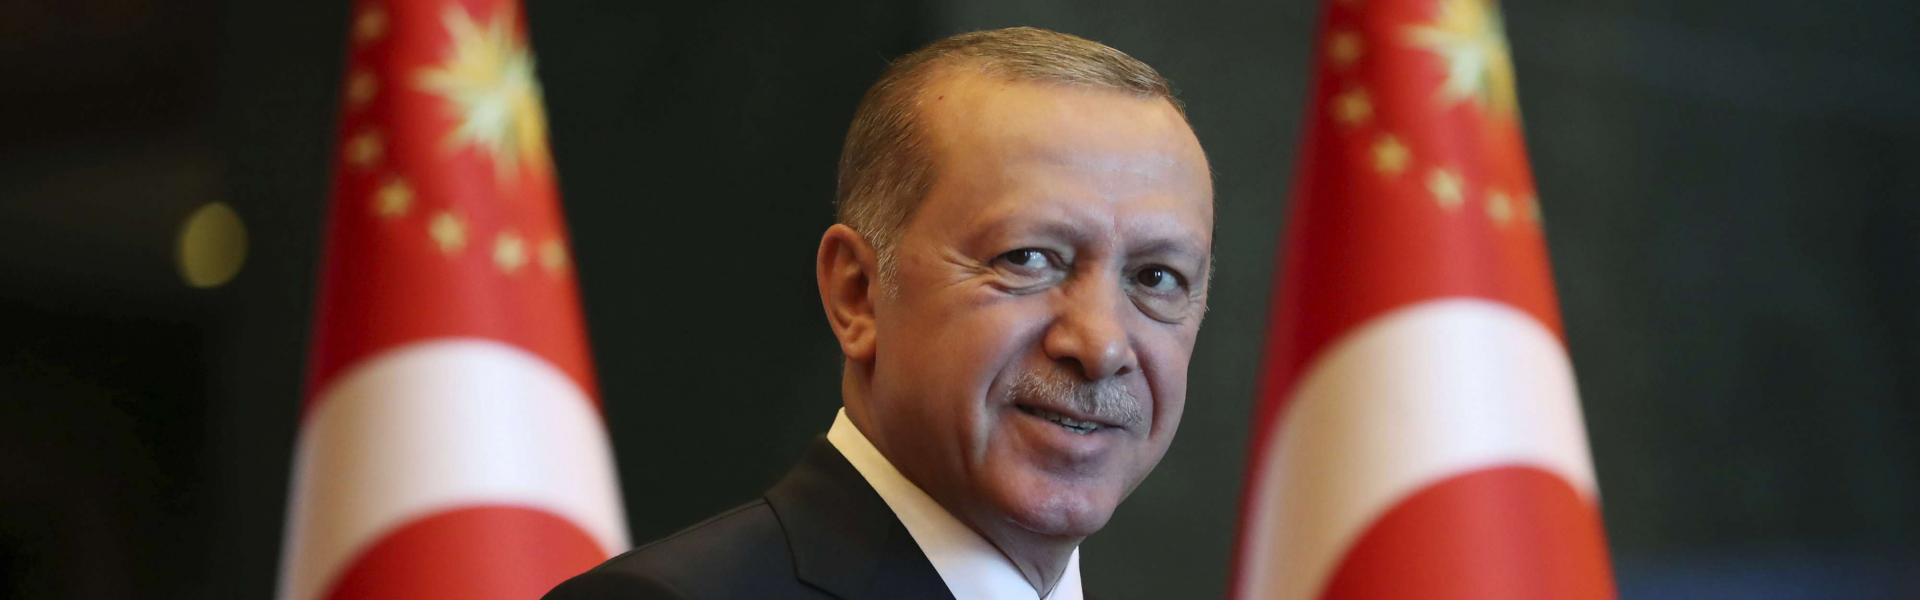 Ινστιτούτο Hudson: «Πιο σημαντική από ποτέ η Τουρκία για τη Δύση» – Κομφούζιο για το πώς θα αντιμετωπιστεί η Αγκυρα